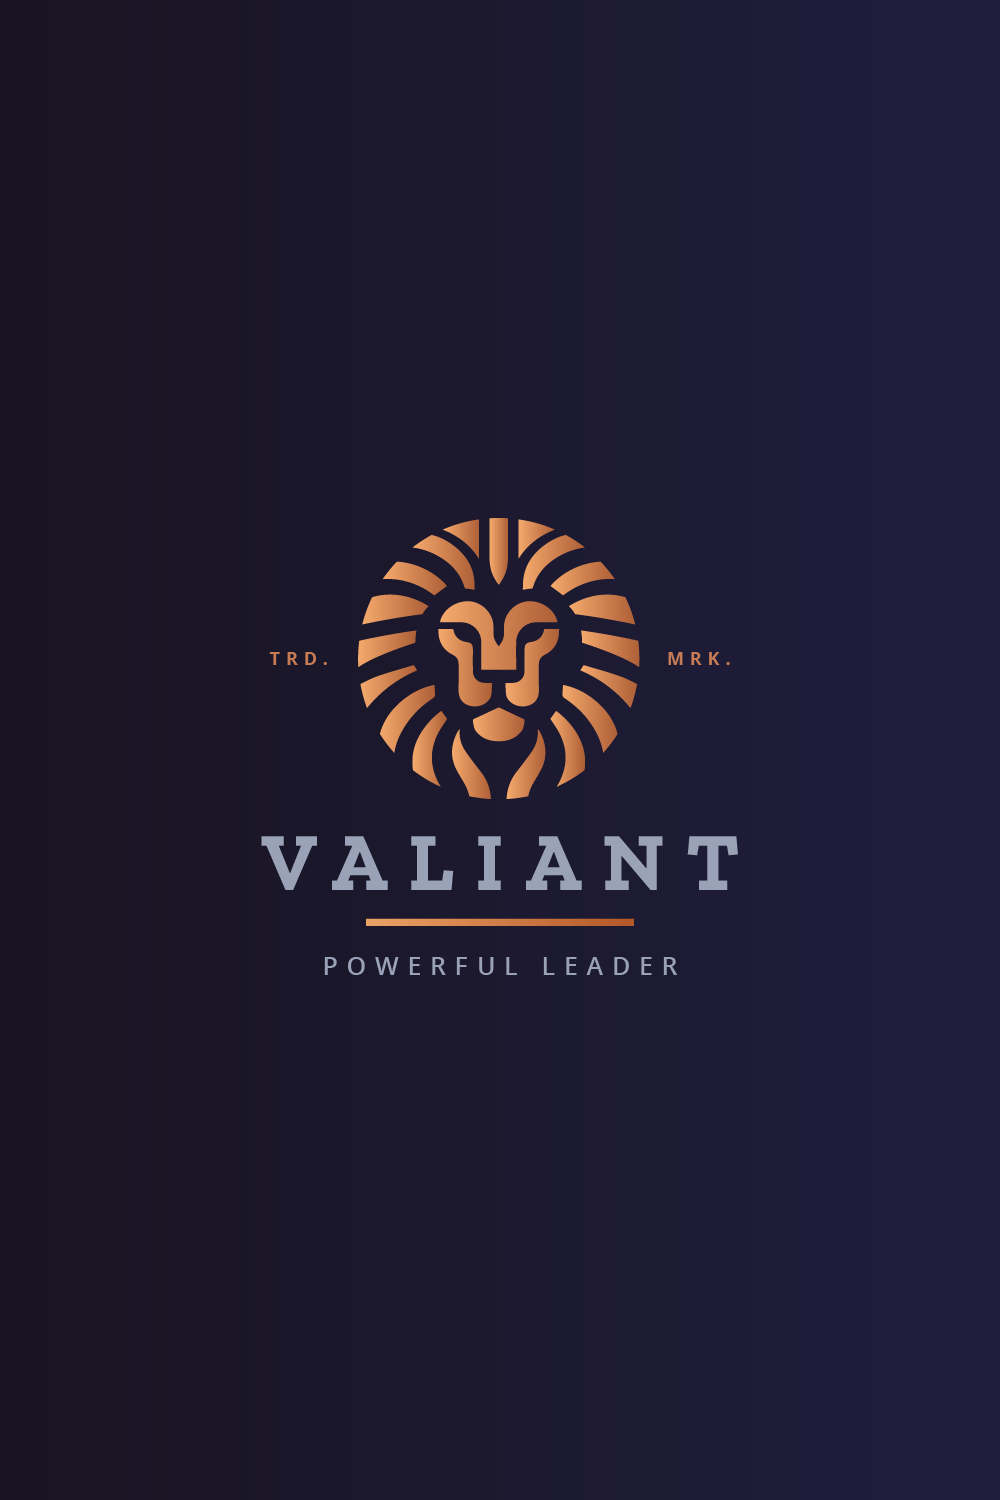 Head Lion Valiant Logo pinterest preview image.